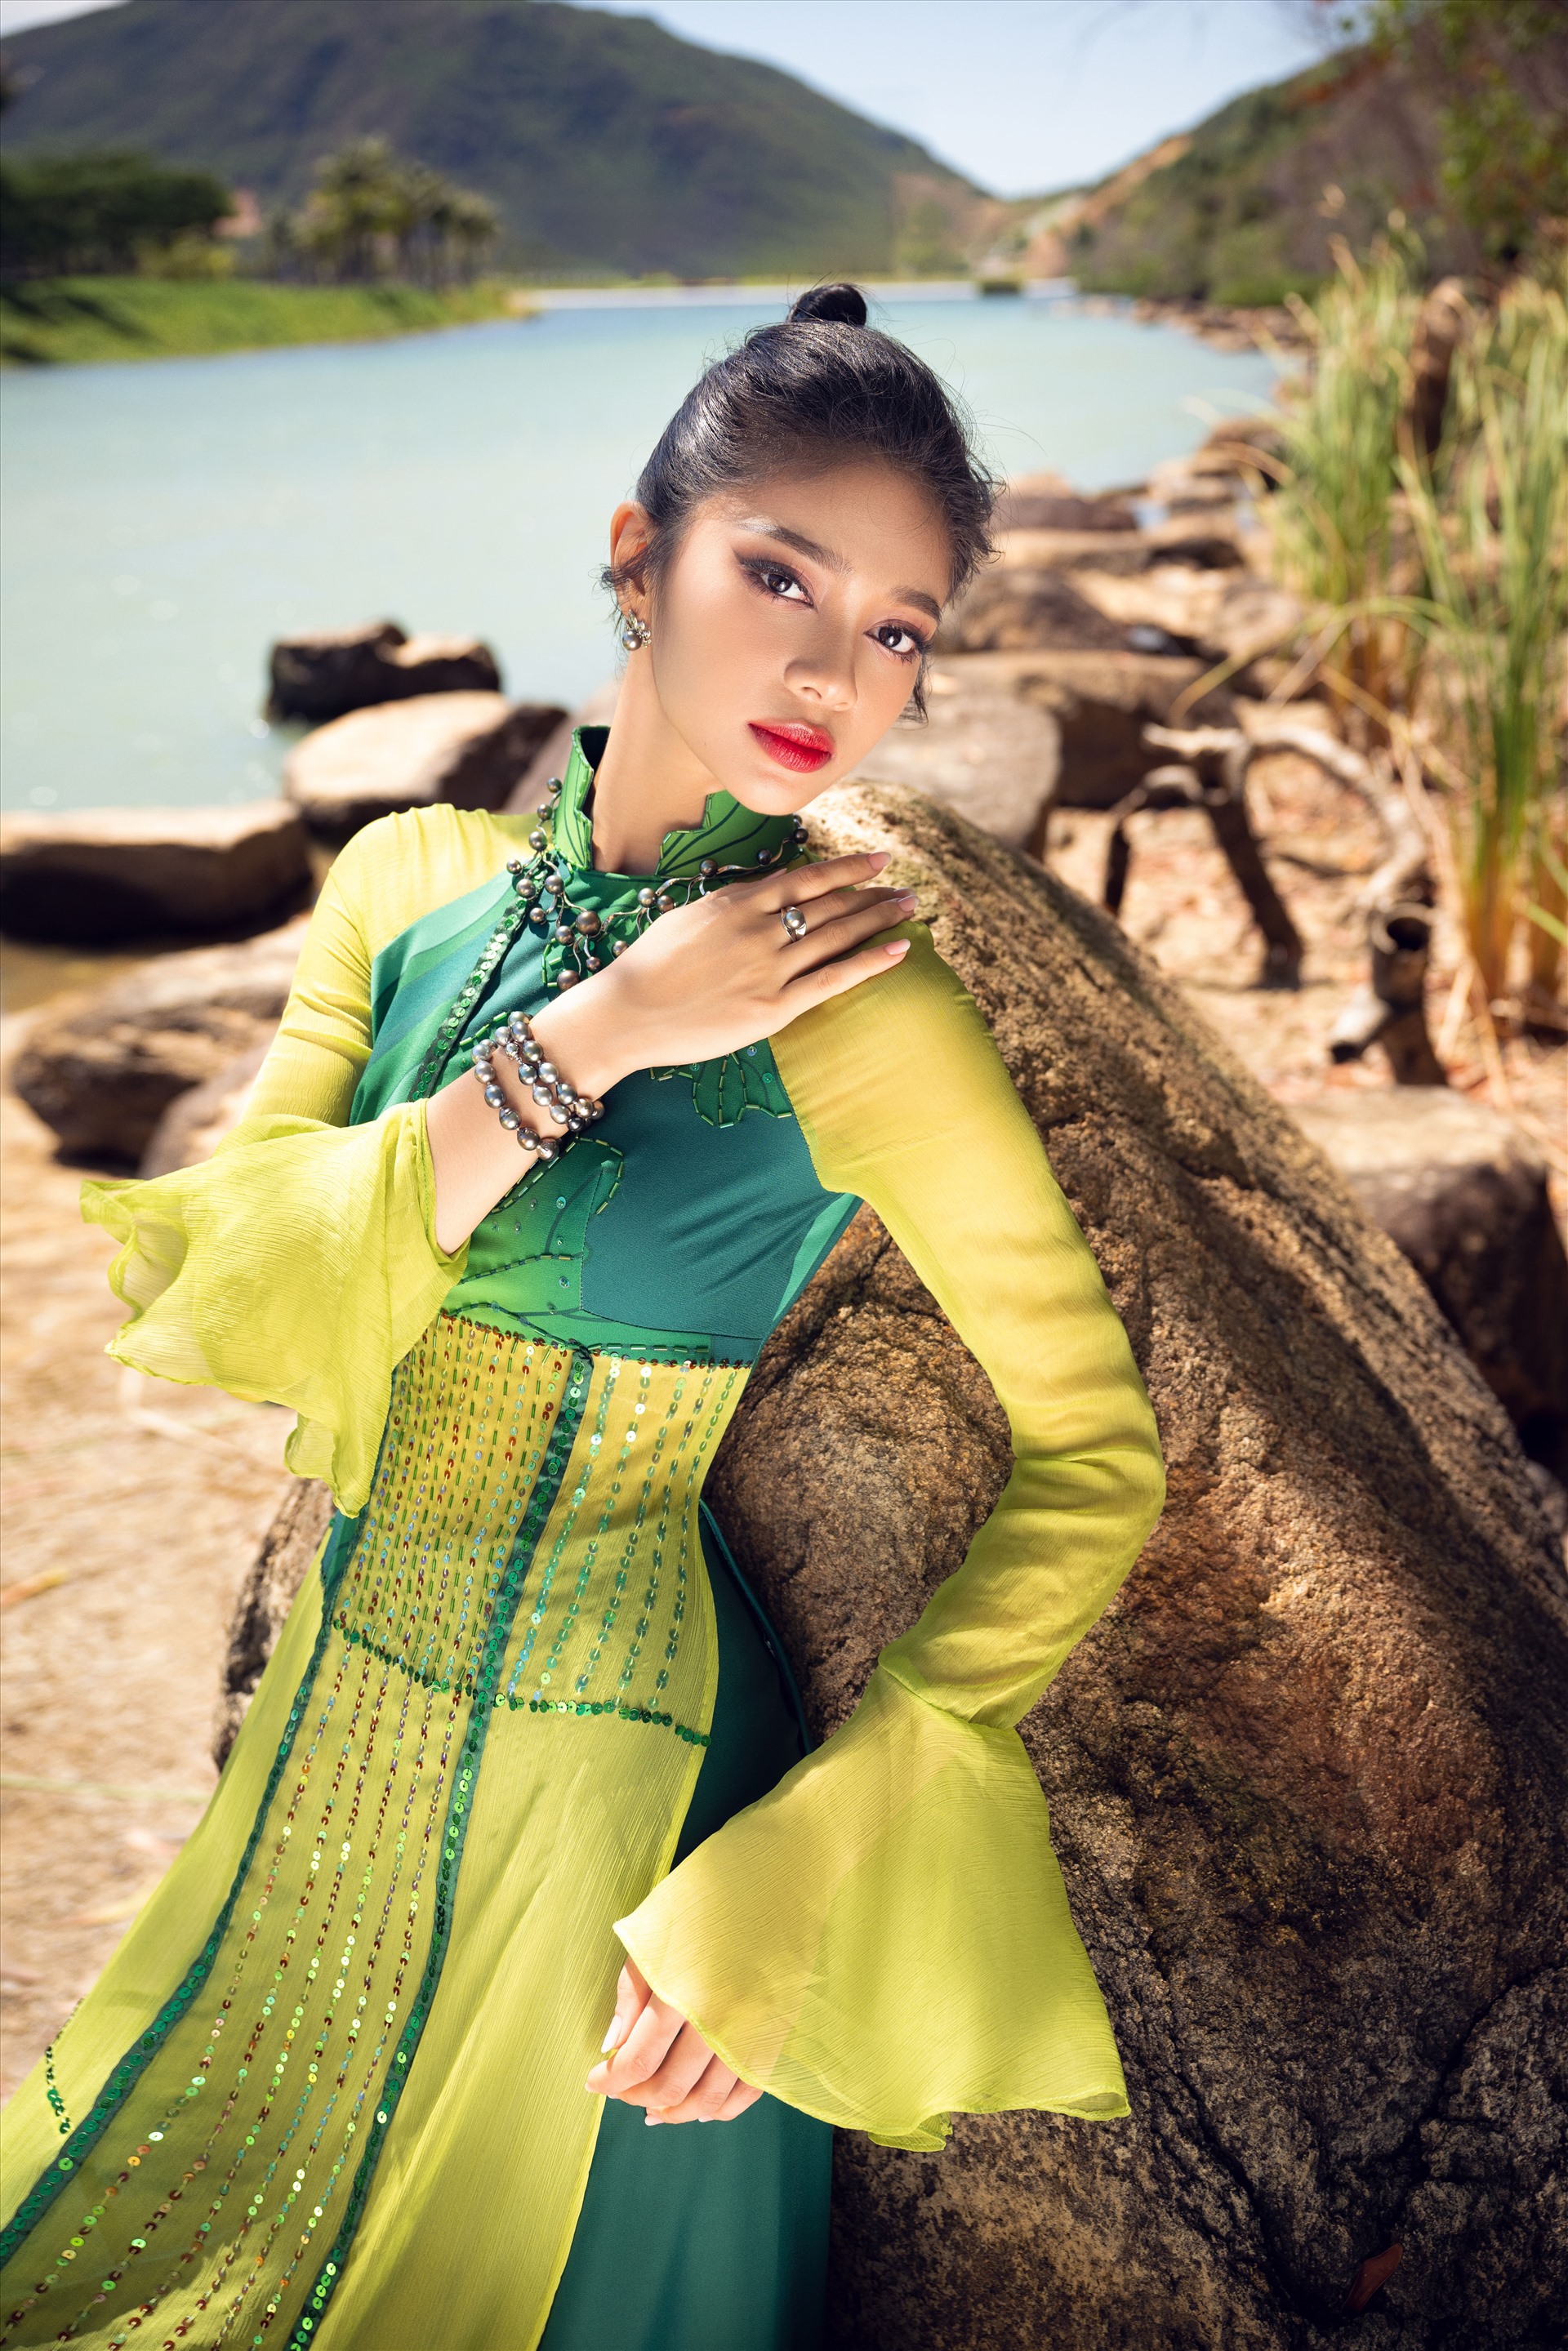 Huỳnh Minh Kiên được coi là thí sinh mang vẻ đẹp lạ tại Miss World Việt Nam 2023. Cô sở hữu gương mặt đậm nét Á Đông nhưng vẫn toát lên vẻ quyến rũ